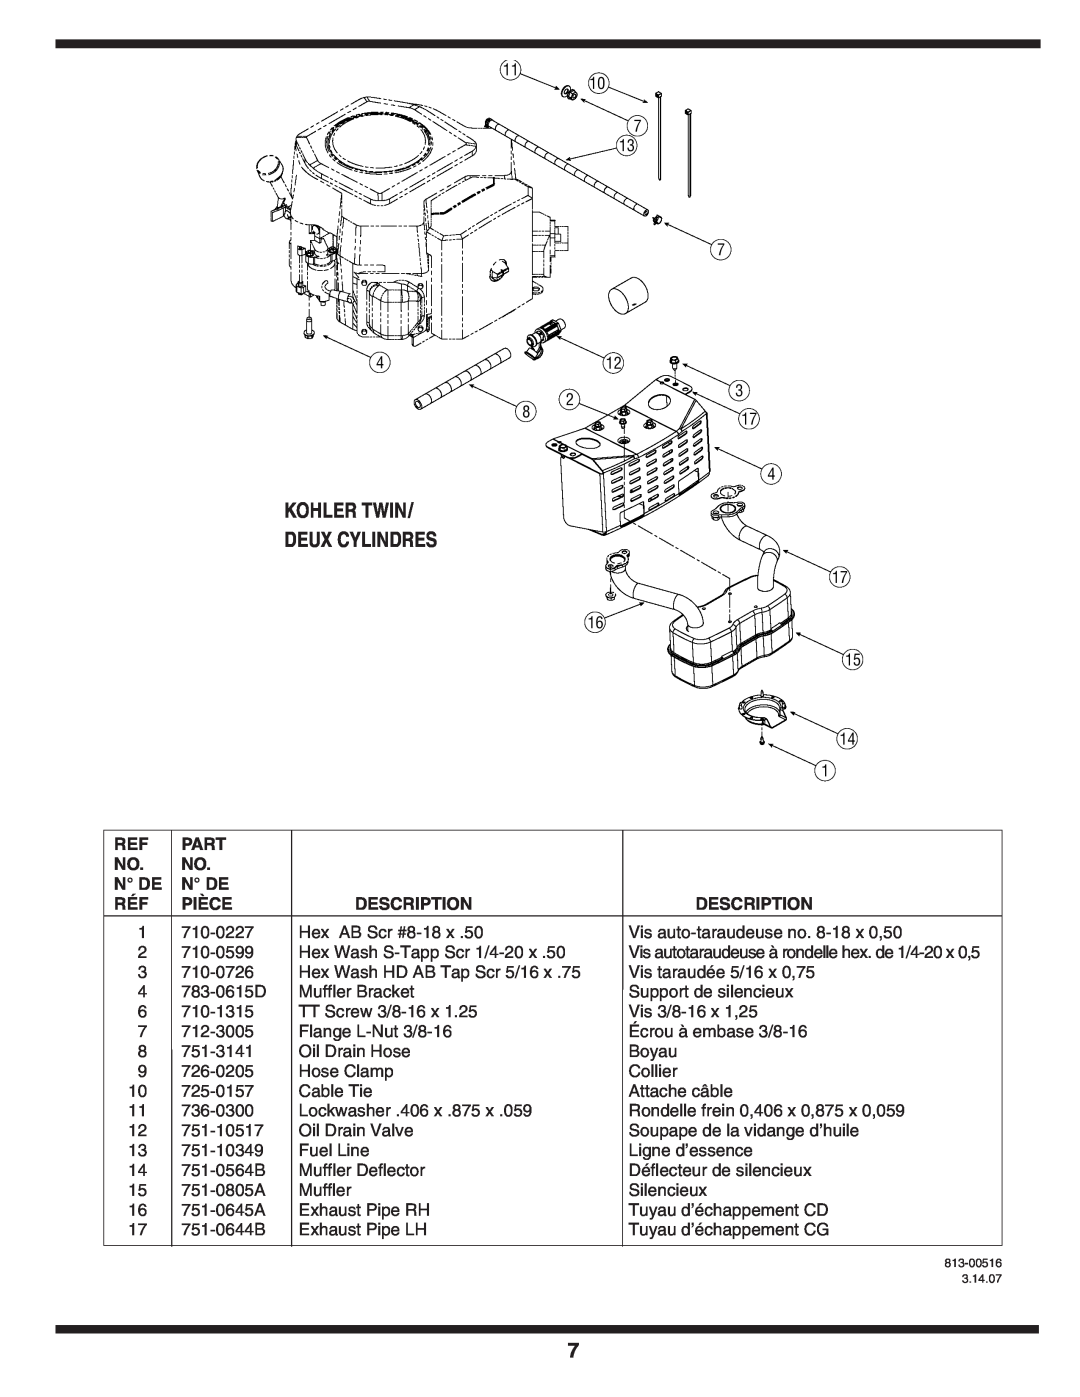 MTD 600 manual Kohler Twin, Deux Cylindres, Part, N De, Pièce, Description 